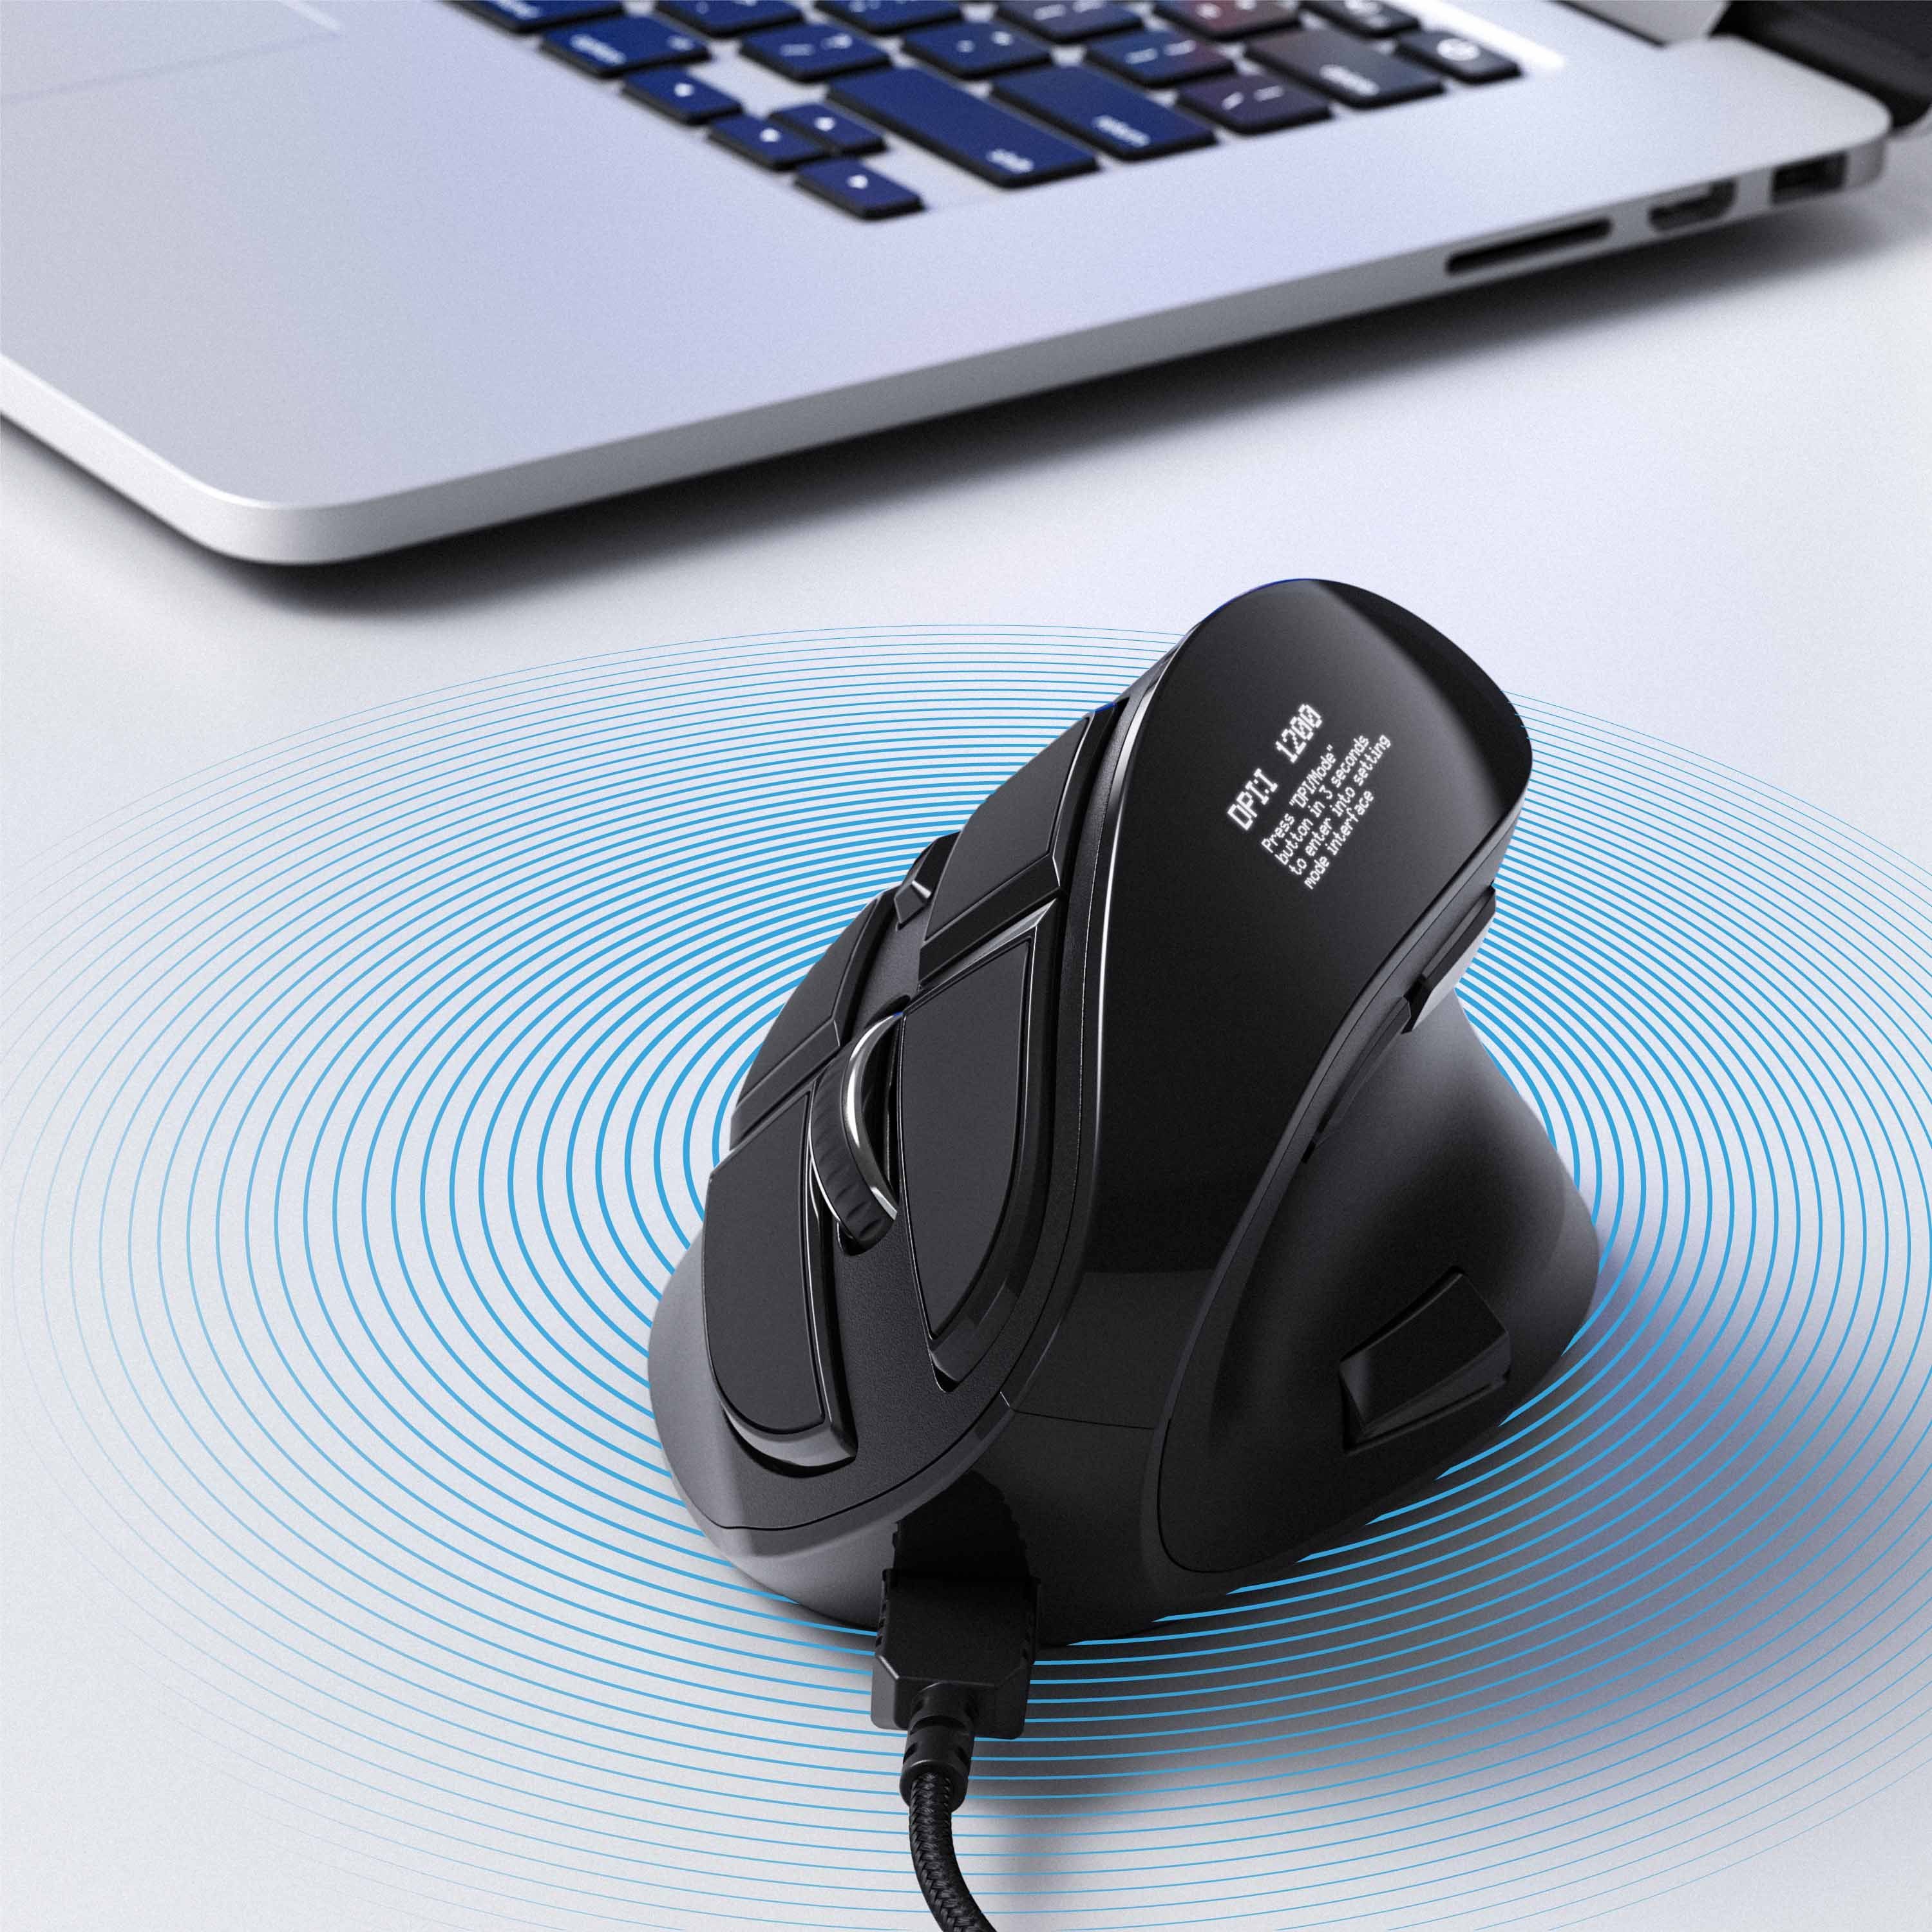 CSL ergonomische Maus 125 Vertikal Maus dpi, kabelgebunden mit Konfigurierbare OLED-Display (kabelgebunden, Tasten)